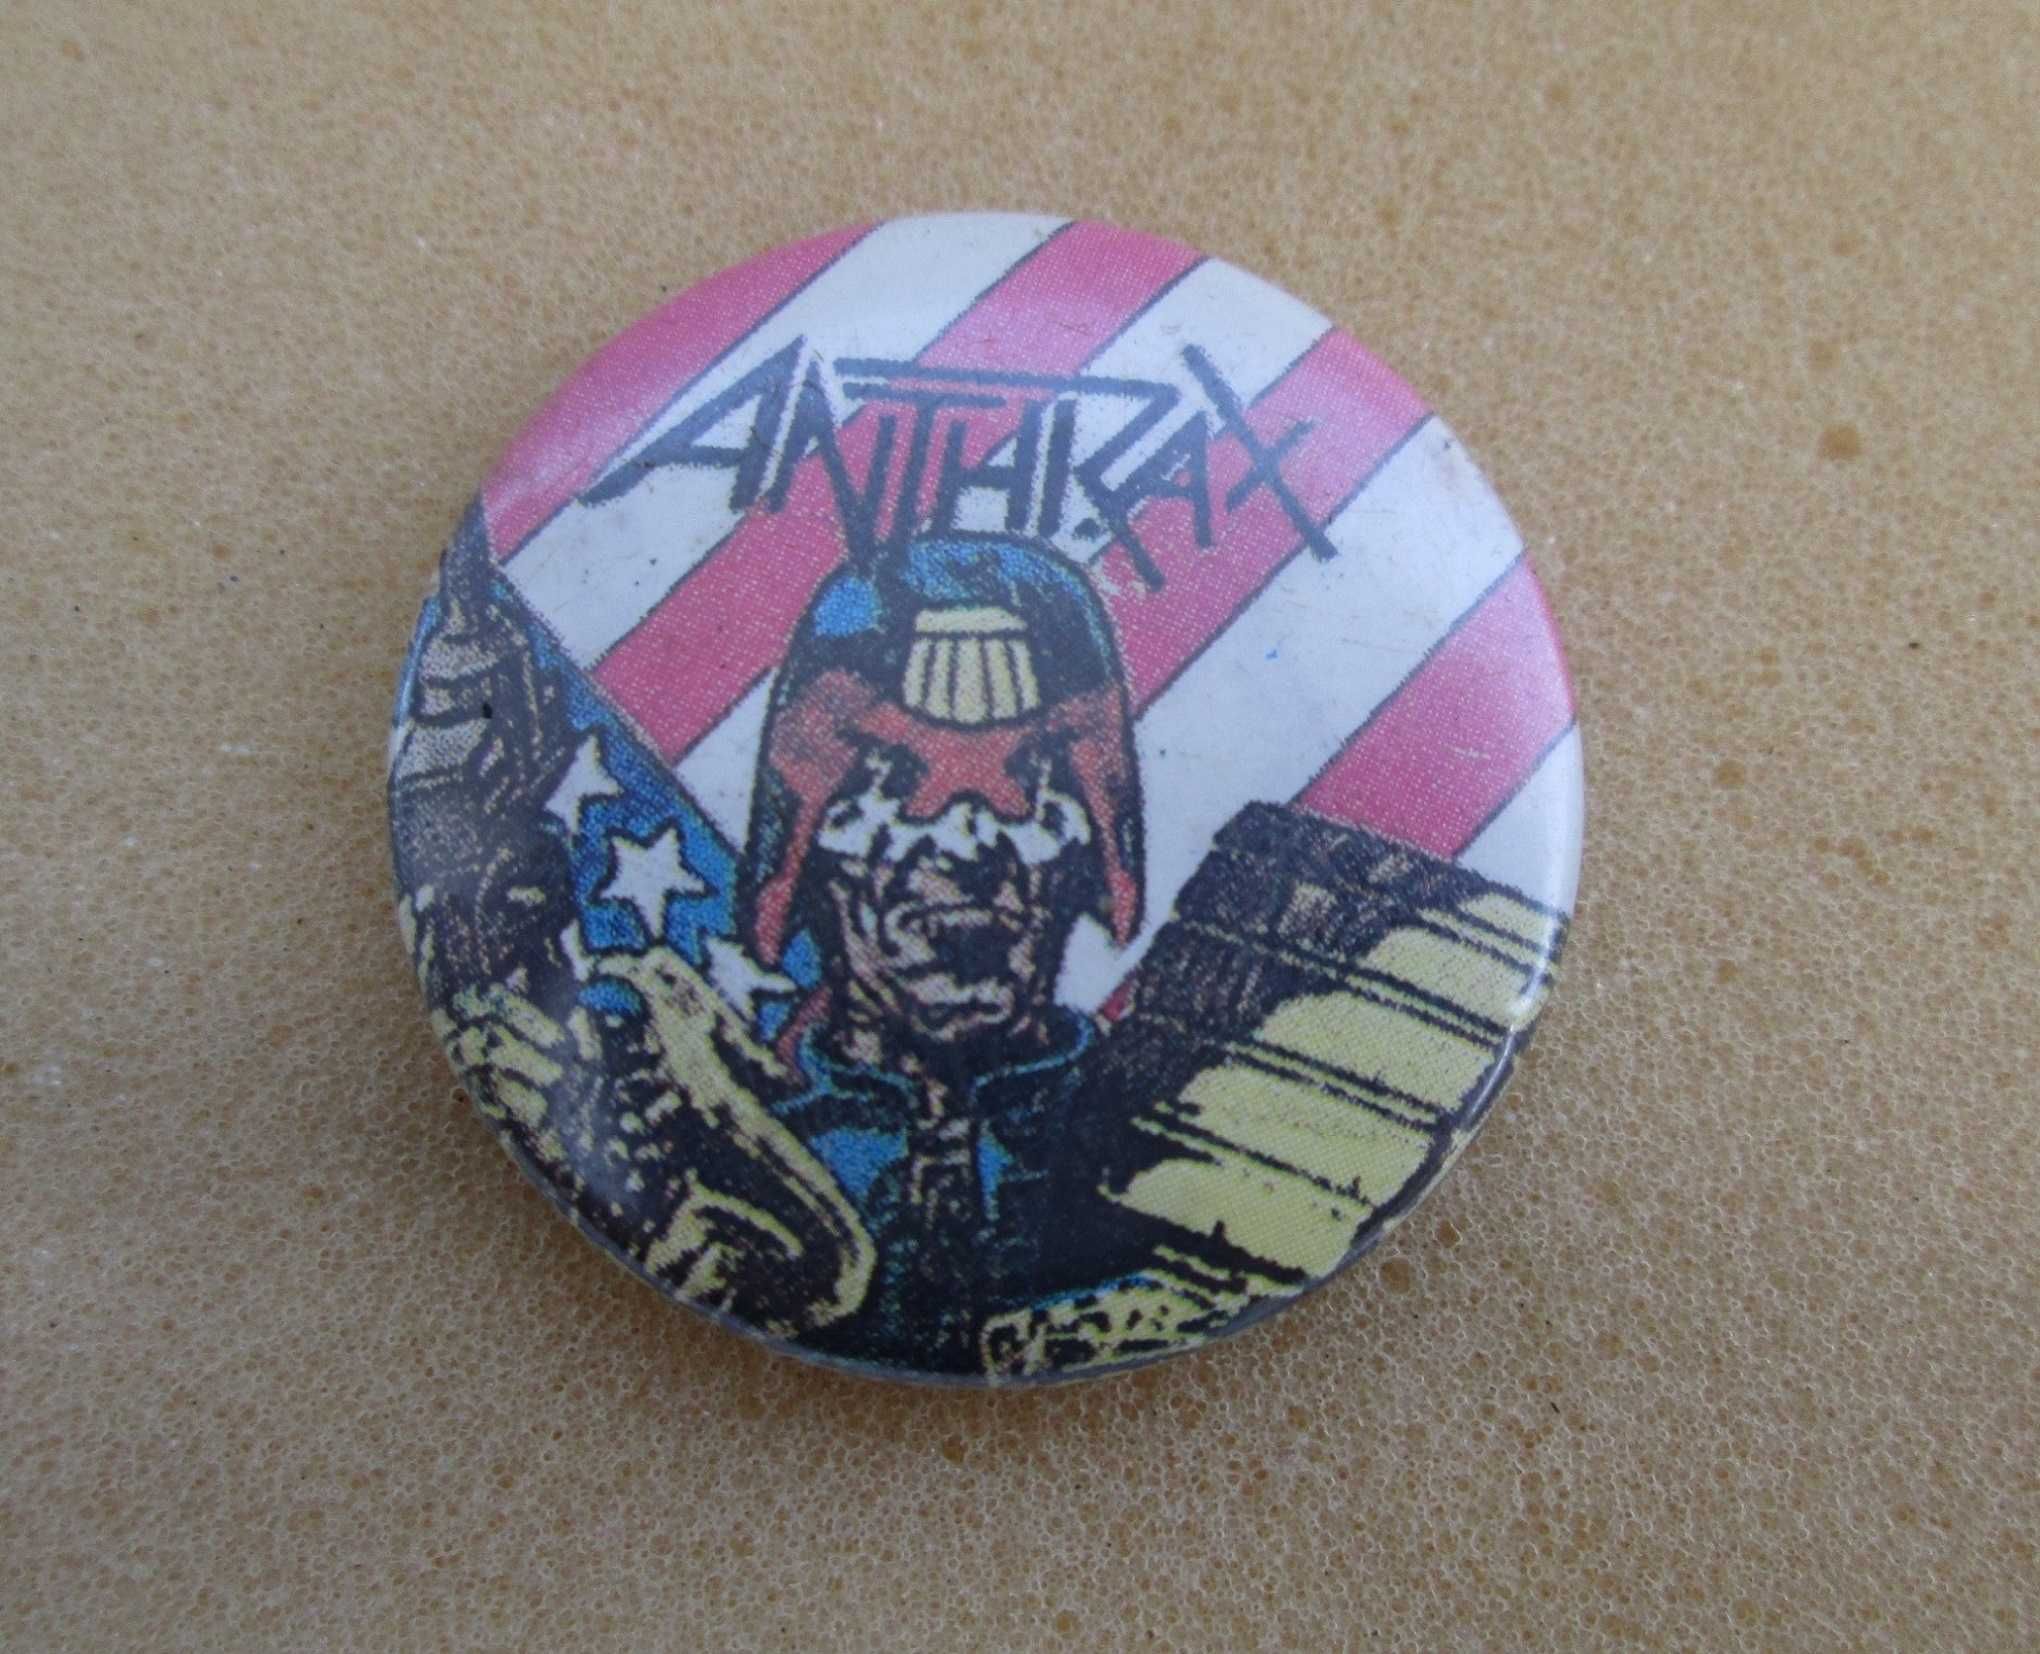 Vintage Anthrax pin badge raro